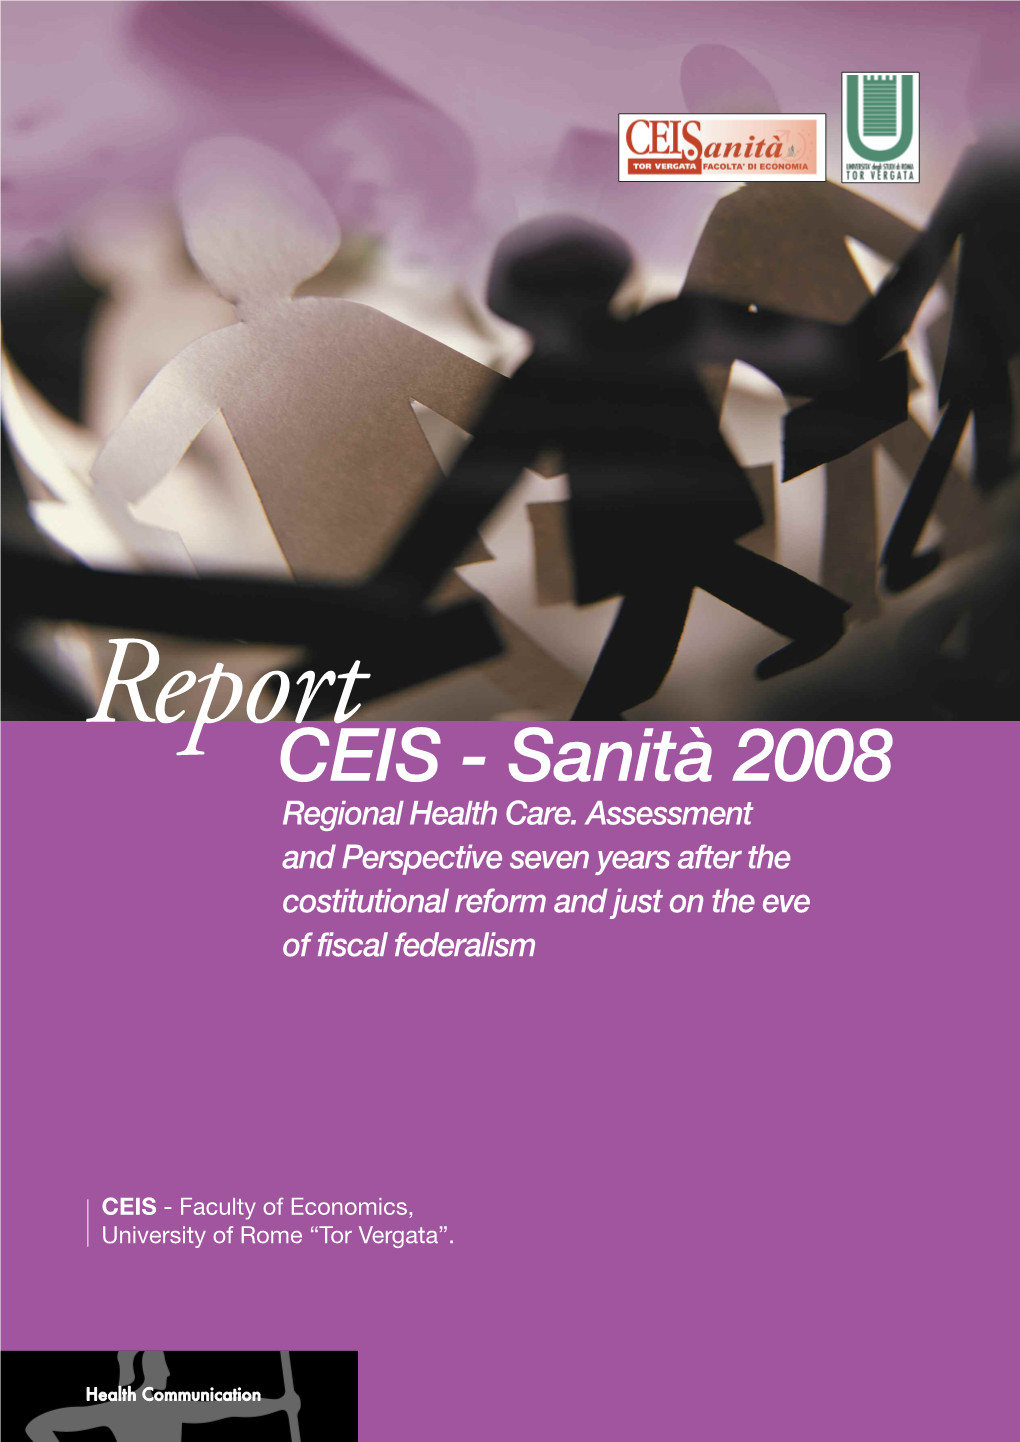 CEIS - Sanità 2008 Regional Health Care